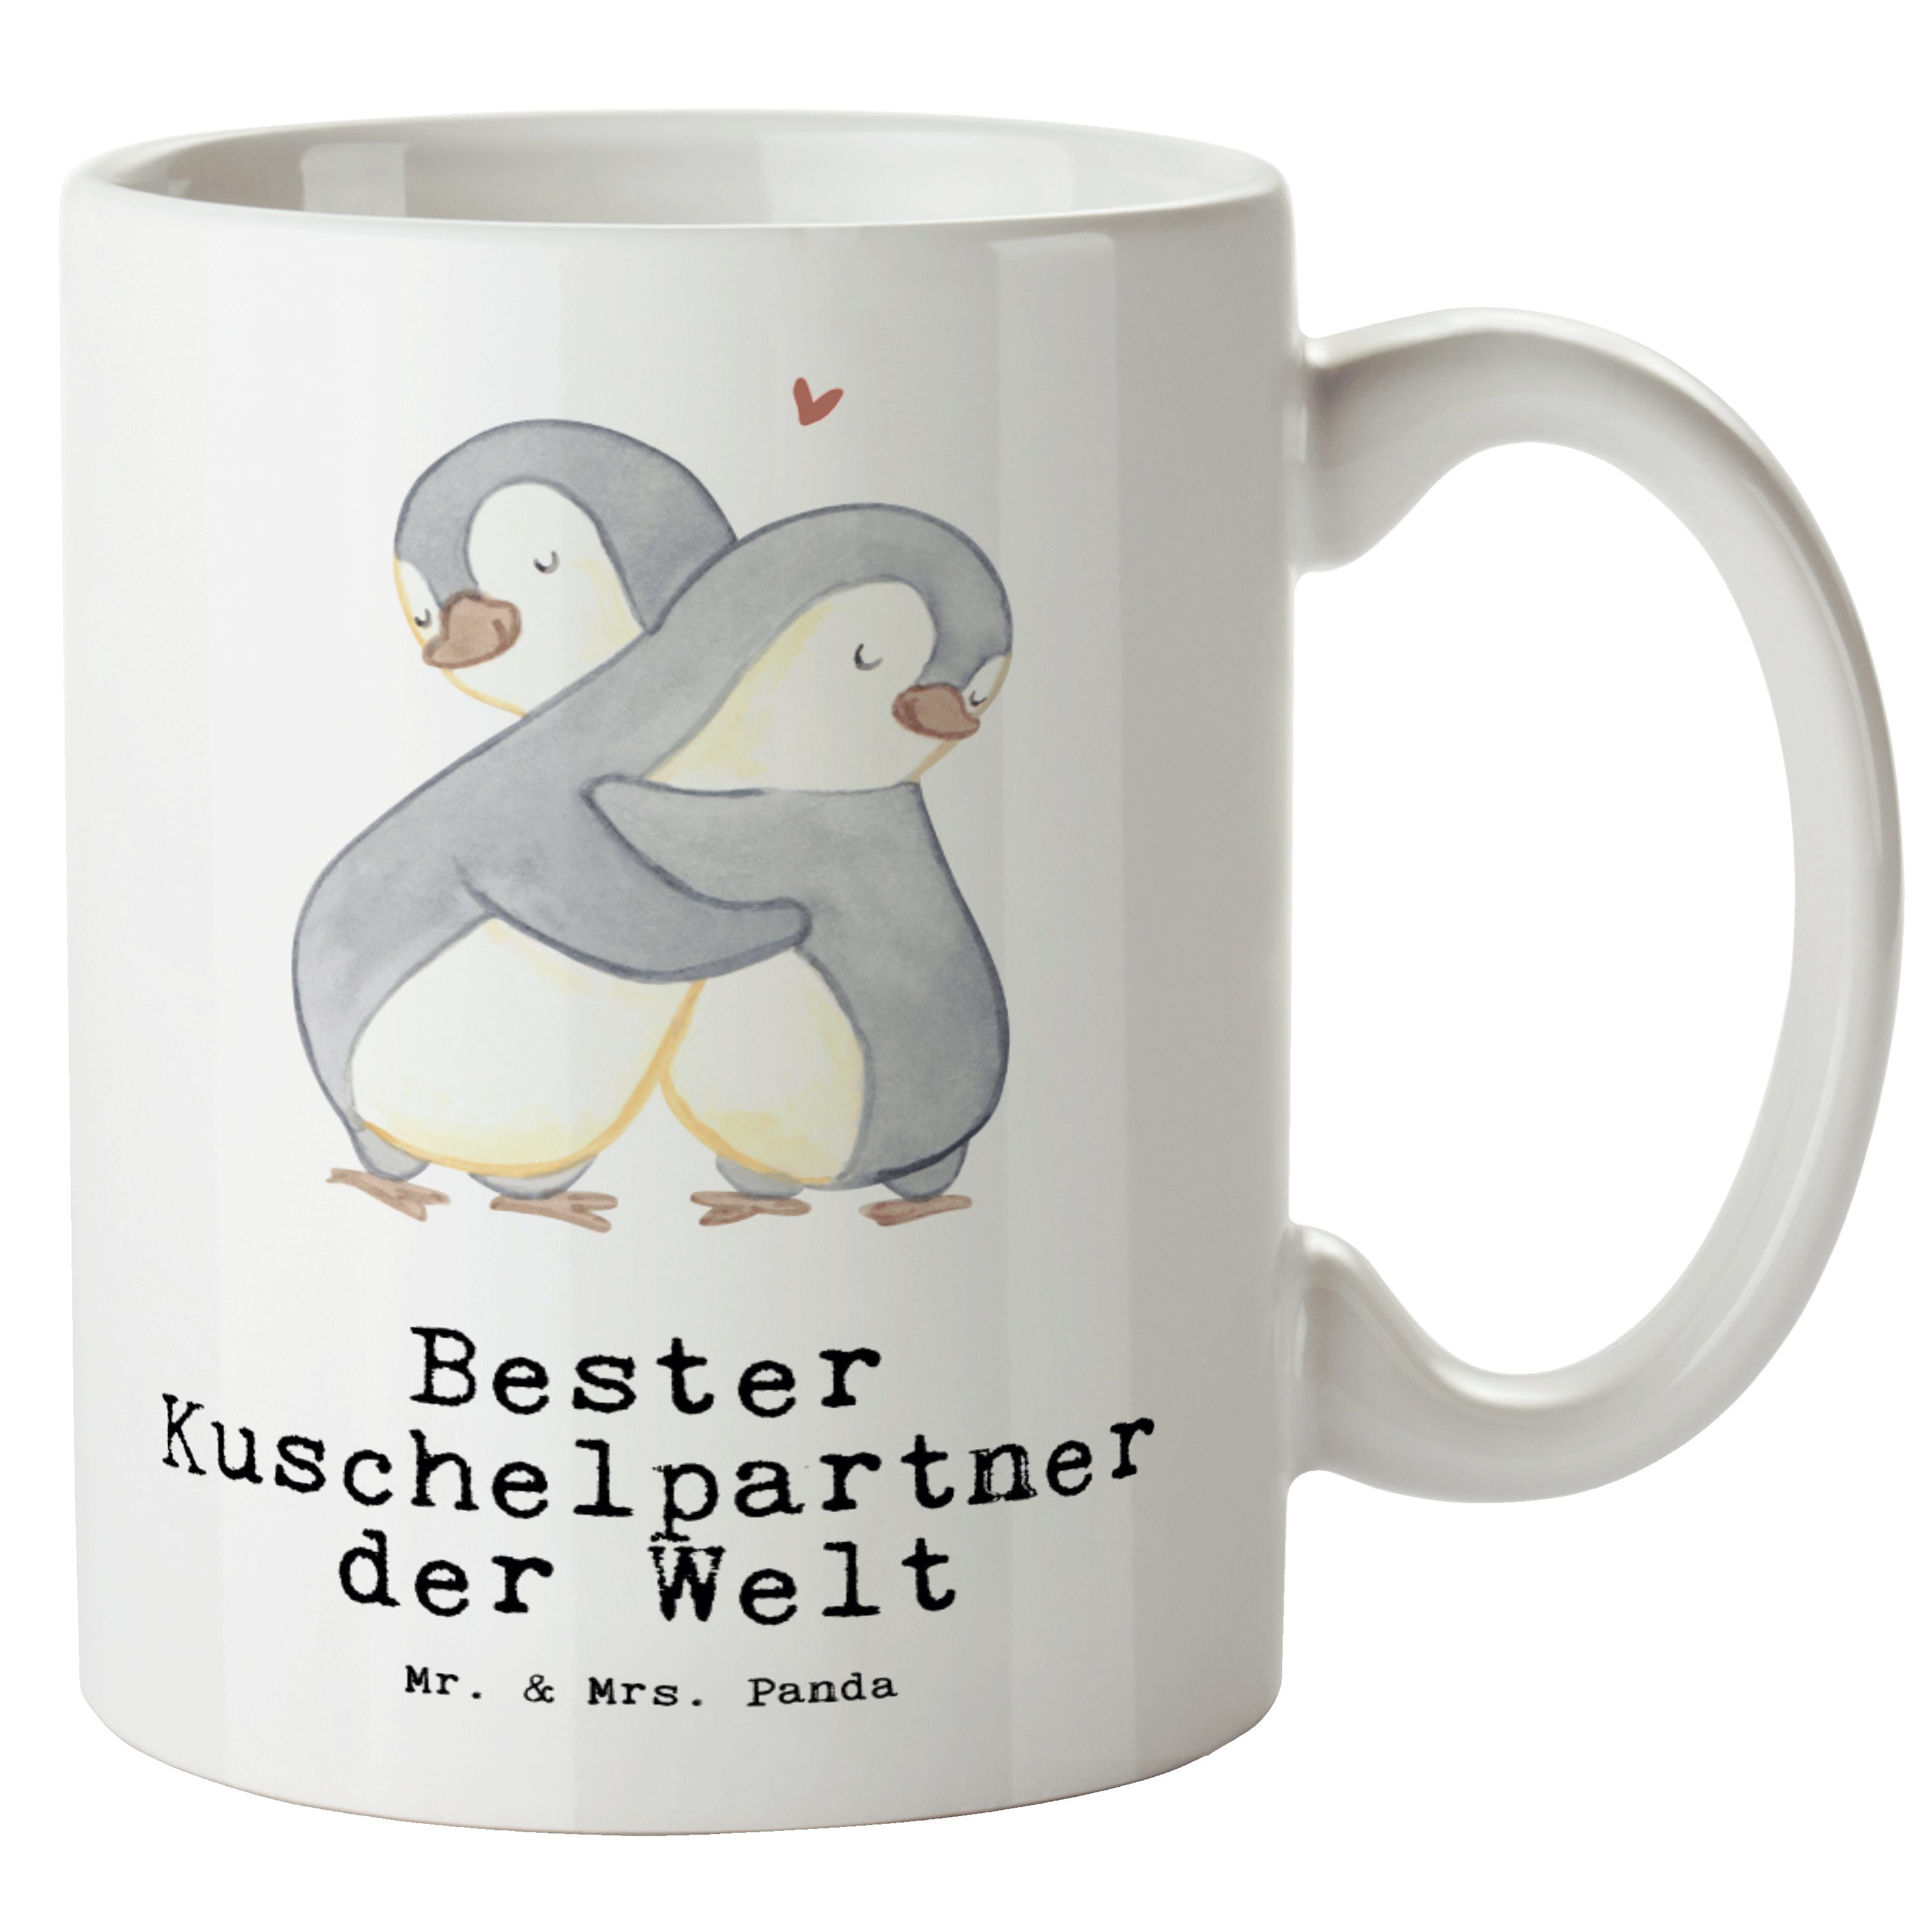 Mr. & Mrs. Panda Welt Bester - Geschenk, Kuschelpartner Keramik XL XL Tasse Tasse Pinguin Becher, der Weiß 